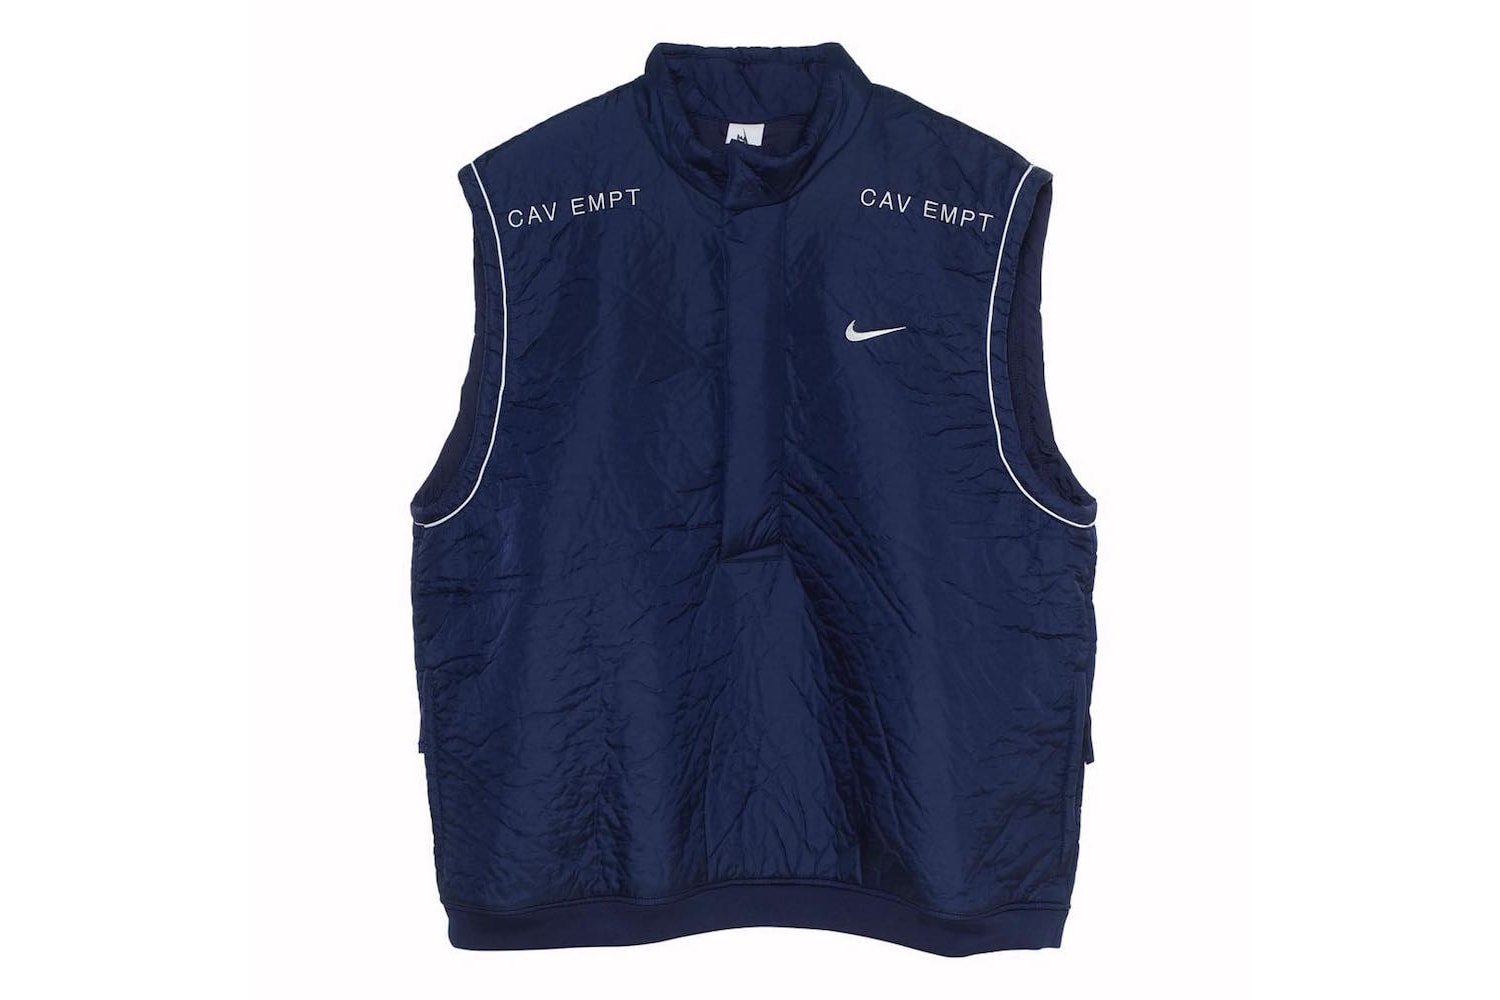 Cav Empt x Nike 聯名系列完整單品一覽